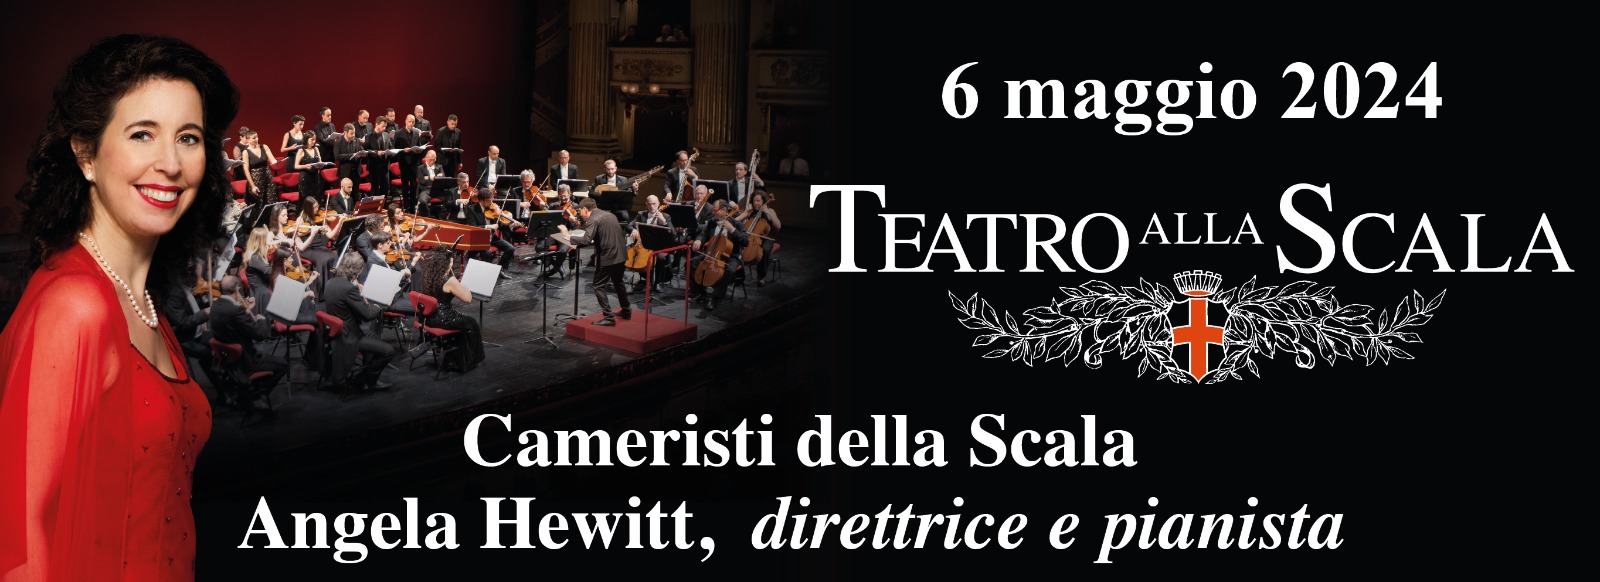 Teatro Alla Scala - Prenota il tuo posto